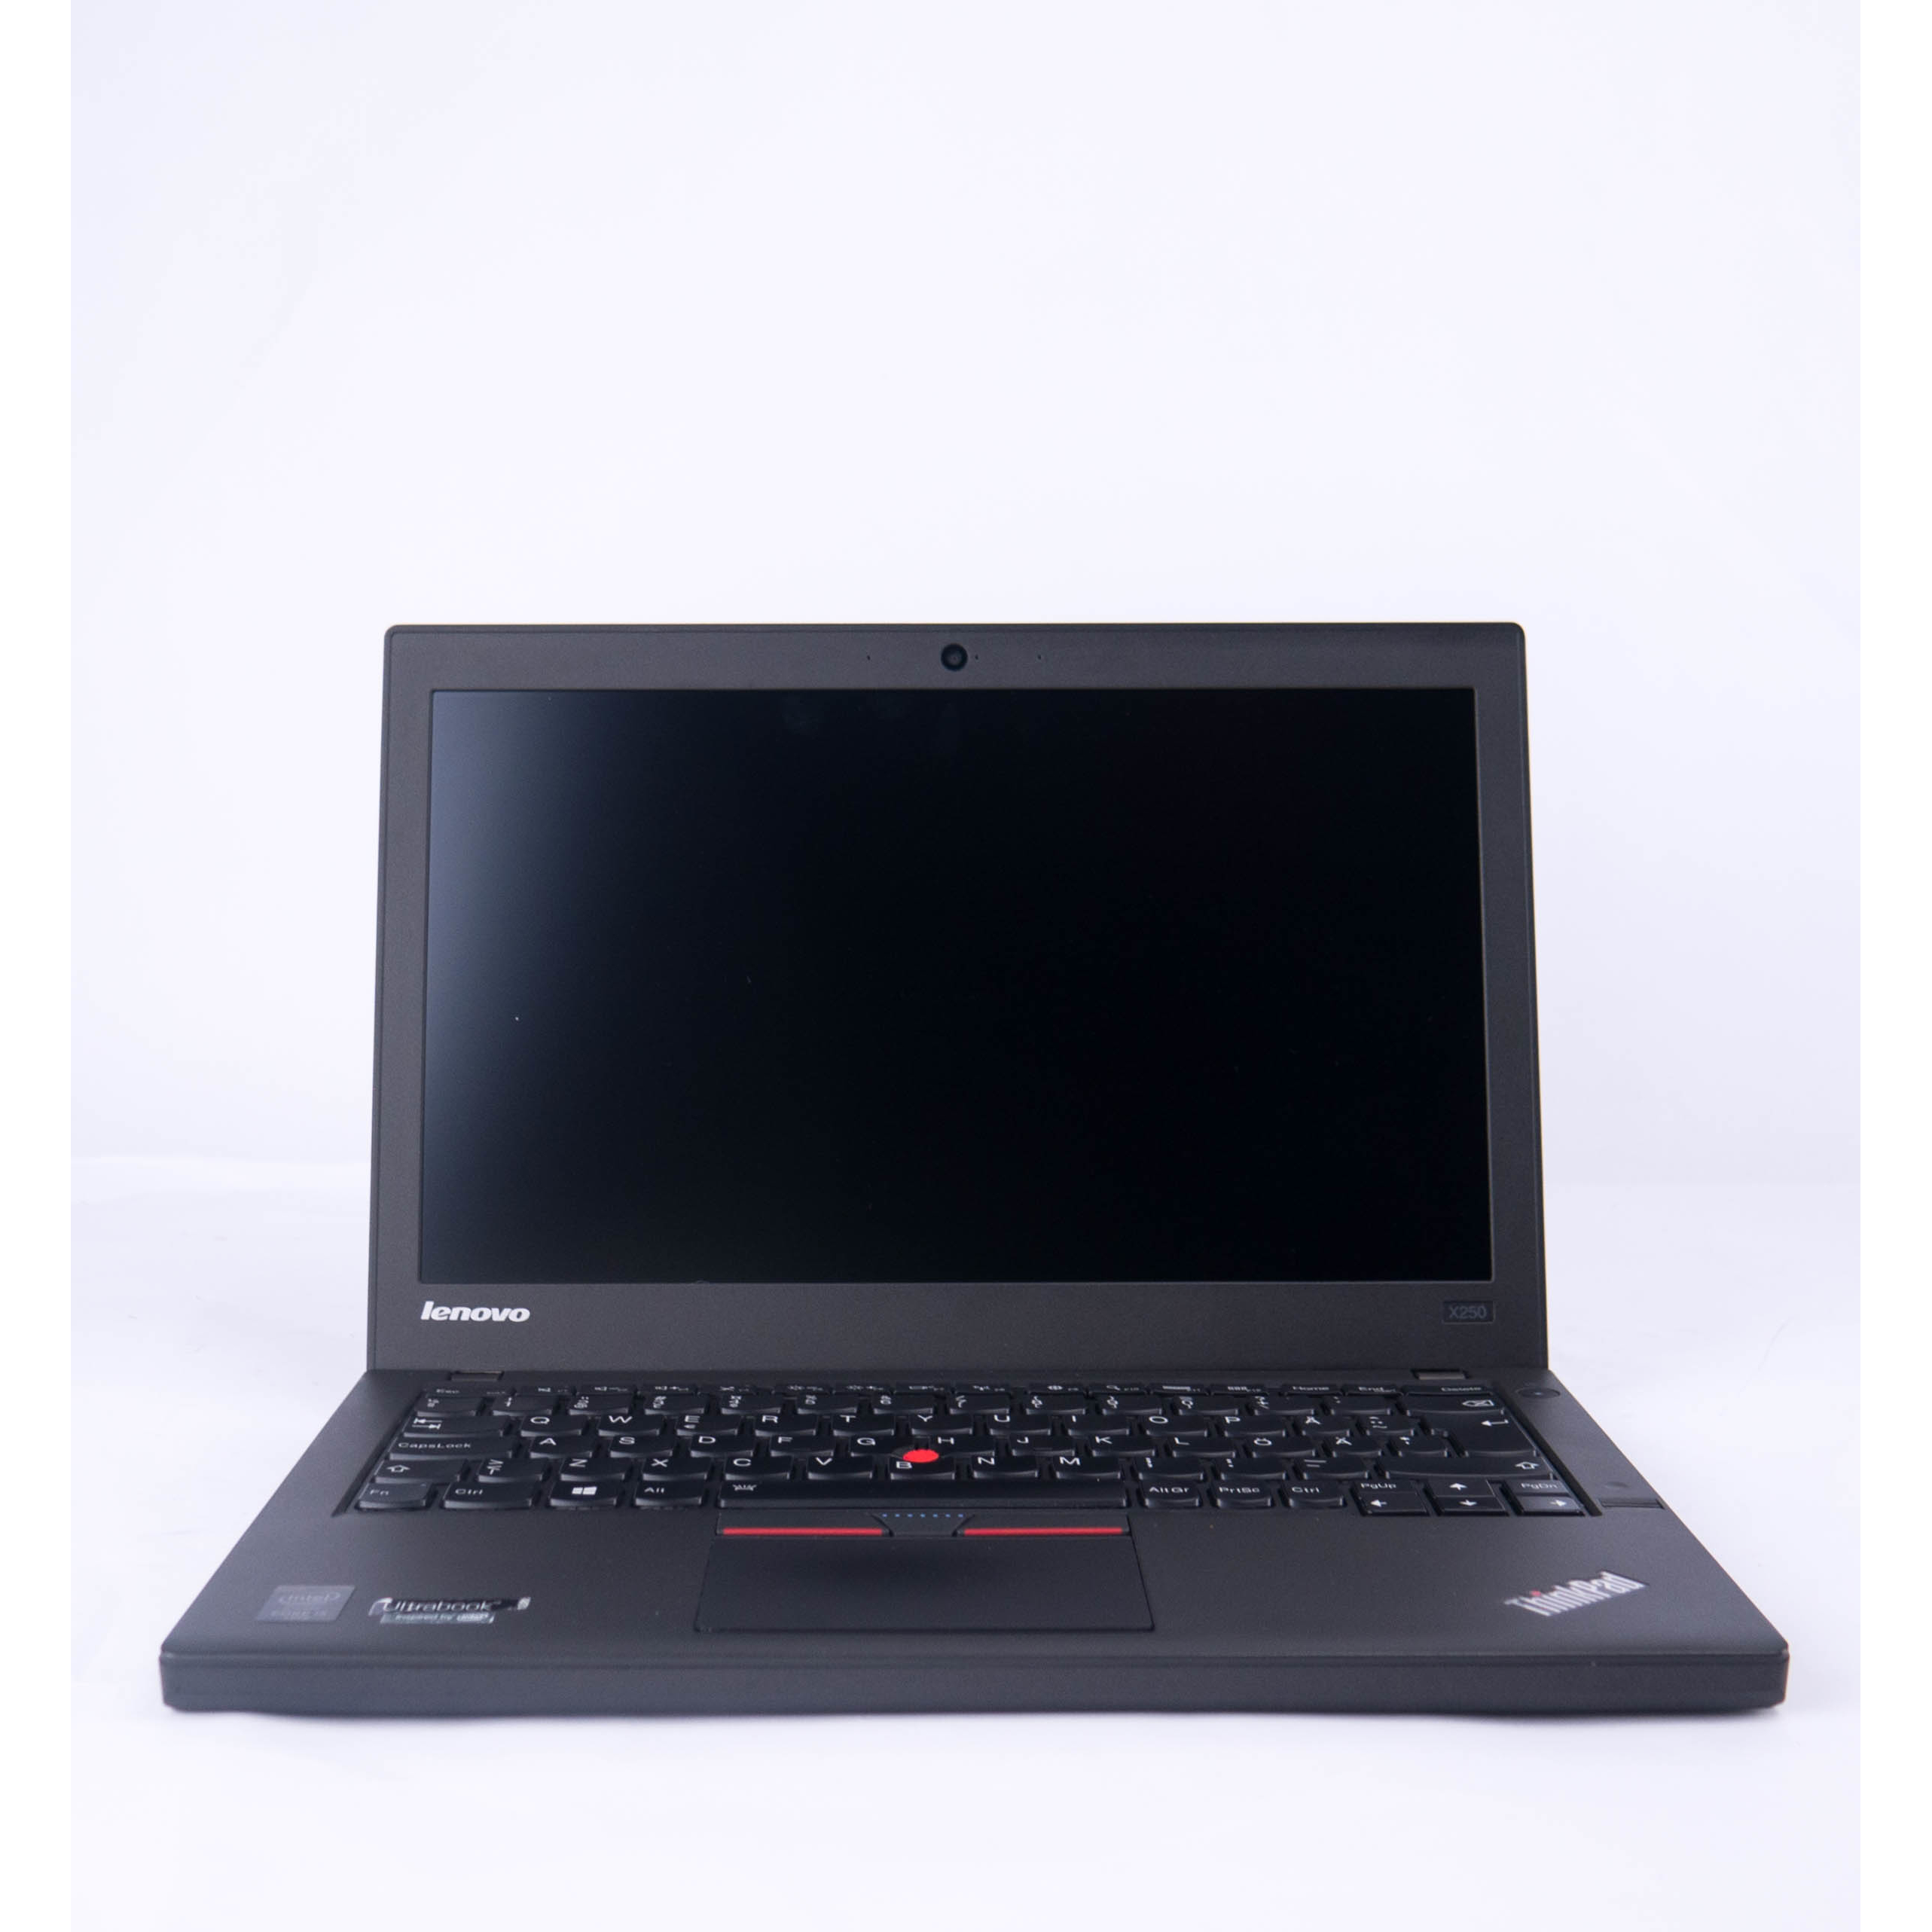 Lenovo ThinkPad X250 Клас Б| Лаптопи втора ръка | iZone